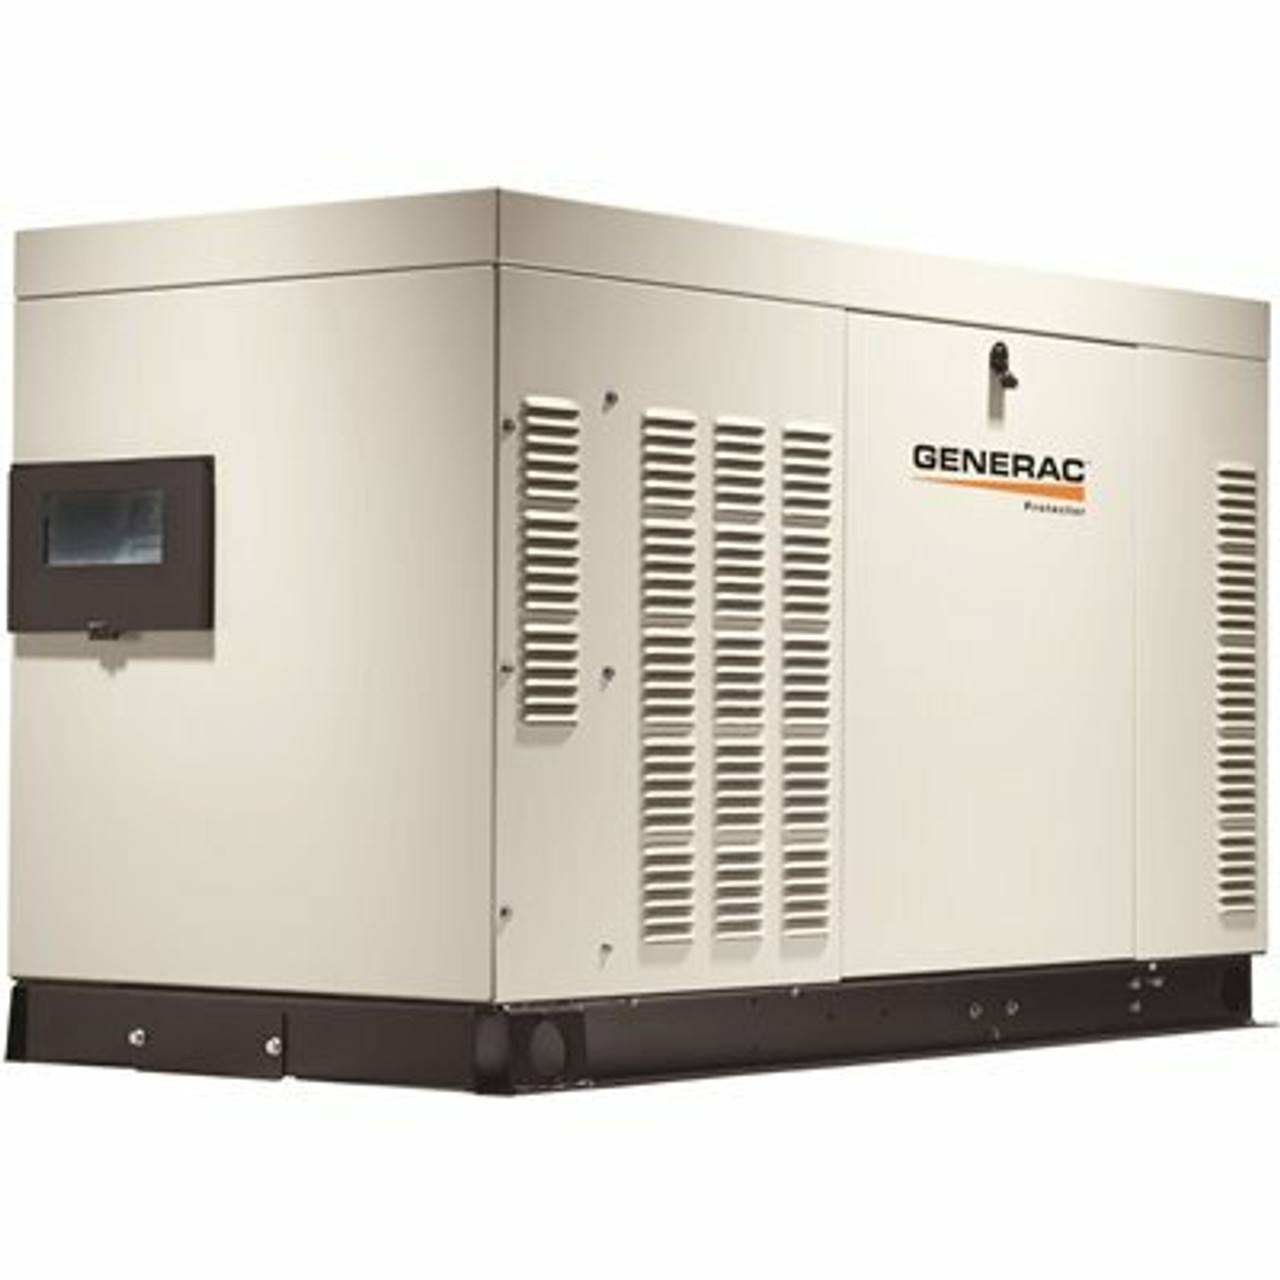 Generac 25,000-Watt 120-Volt/240-Volt Liquid Cooled Standby Generator 3-Phase With Aluminum Enclosure